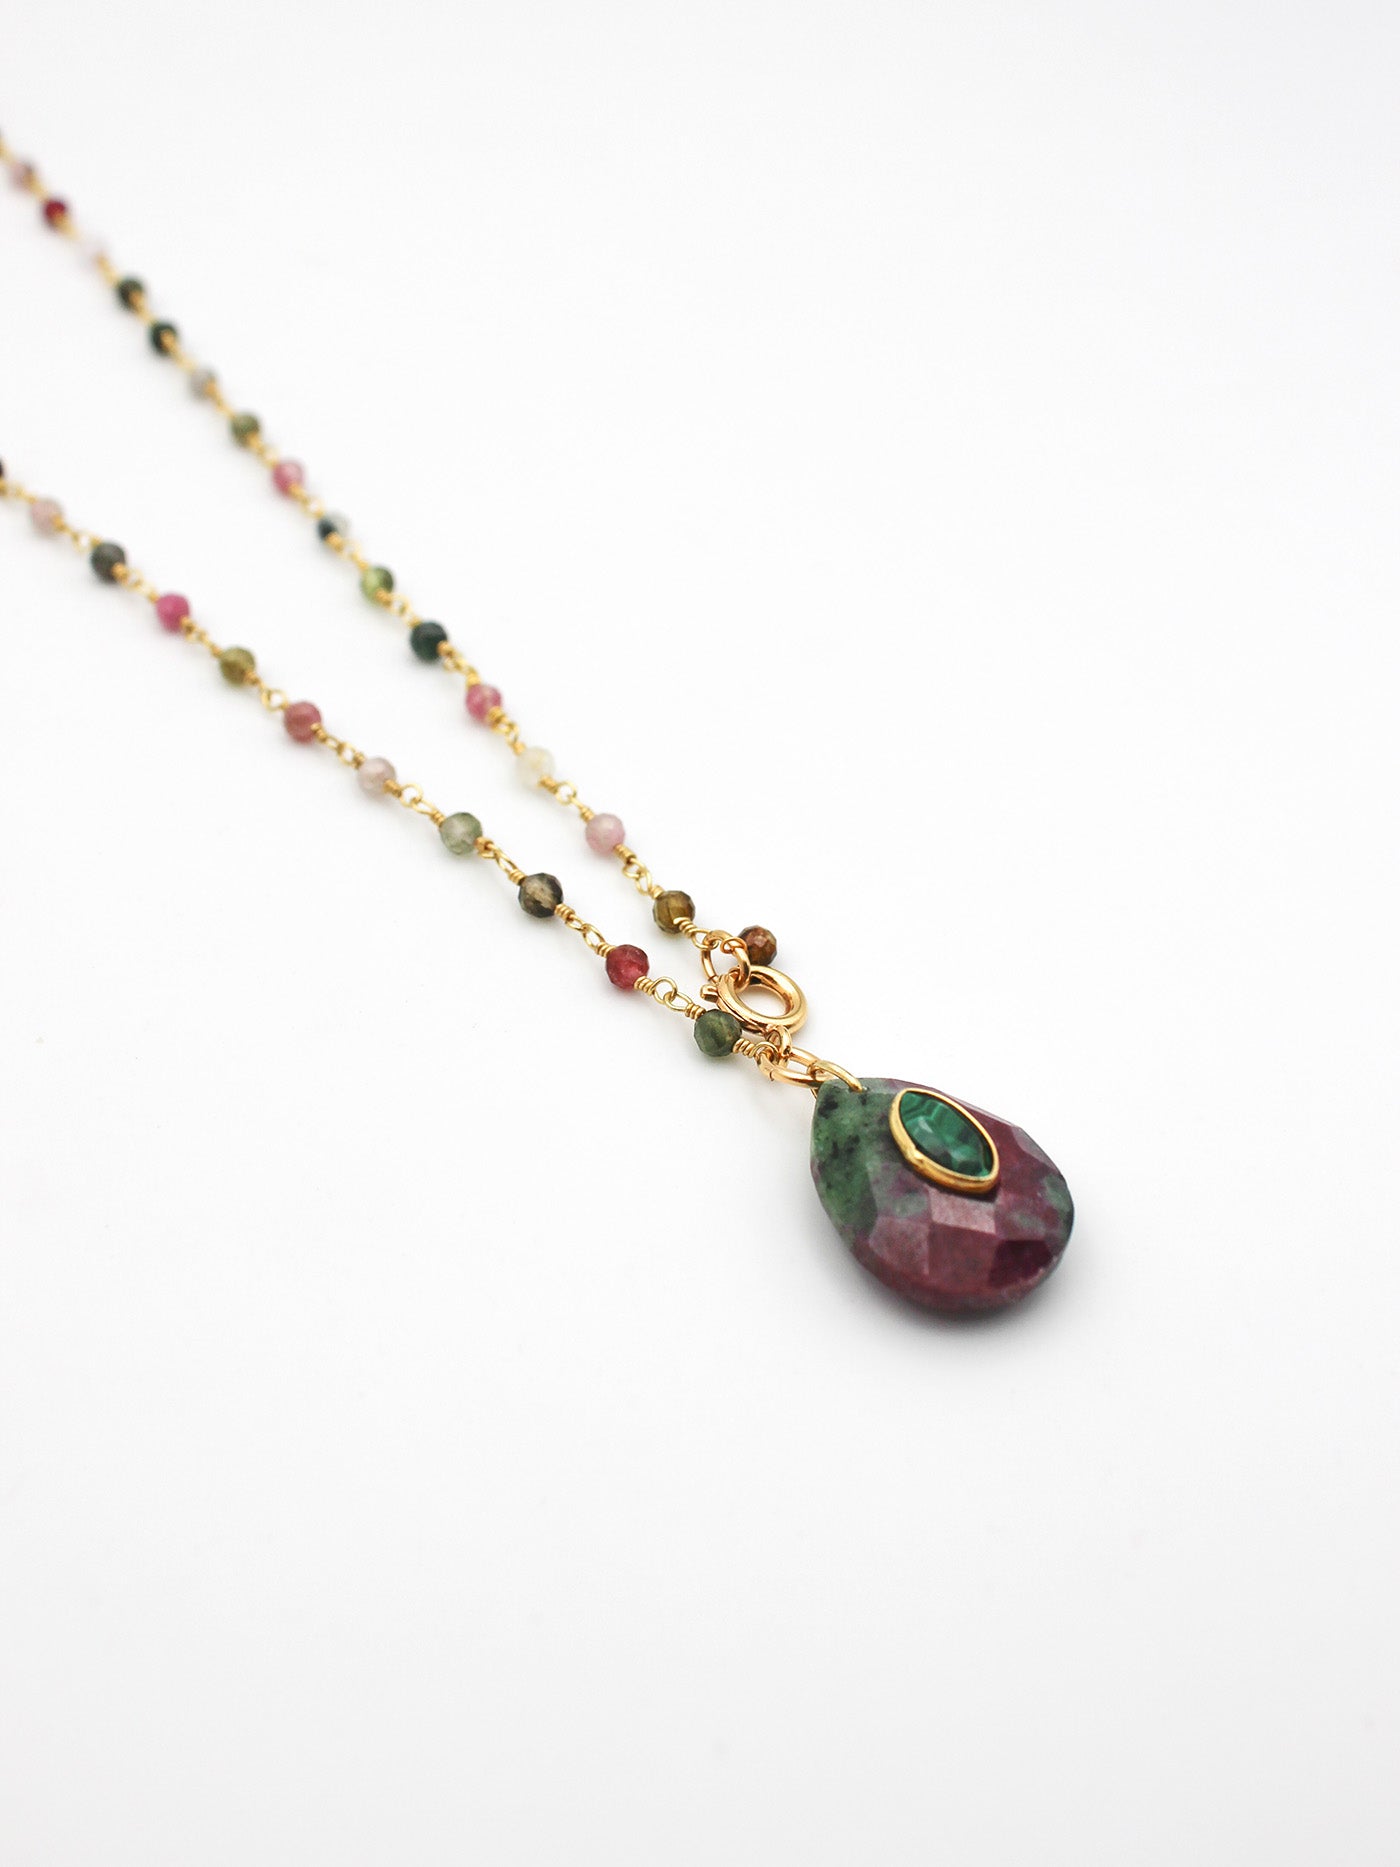 Collier perles et goutte - gamme ALBA - pierres naturelles : watermelon tourmaline, ruby zoïsite, malachite - nouvelle collection 23FW - l’Atelier des Dames